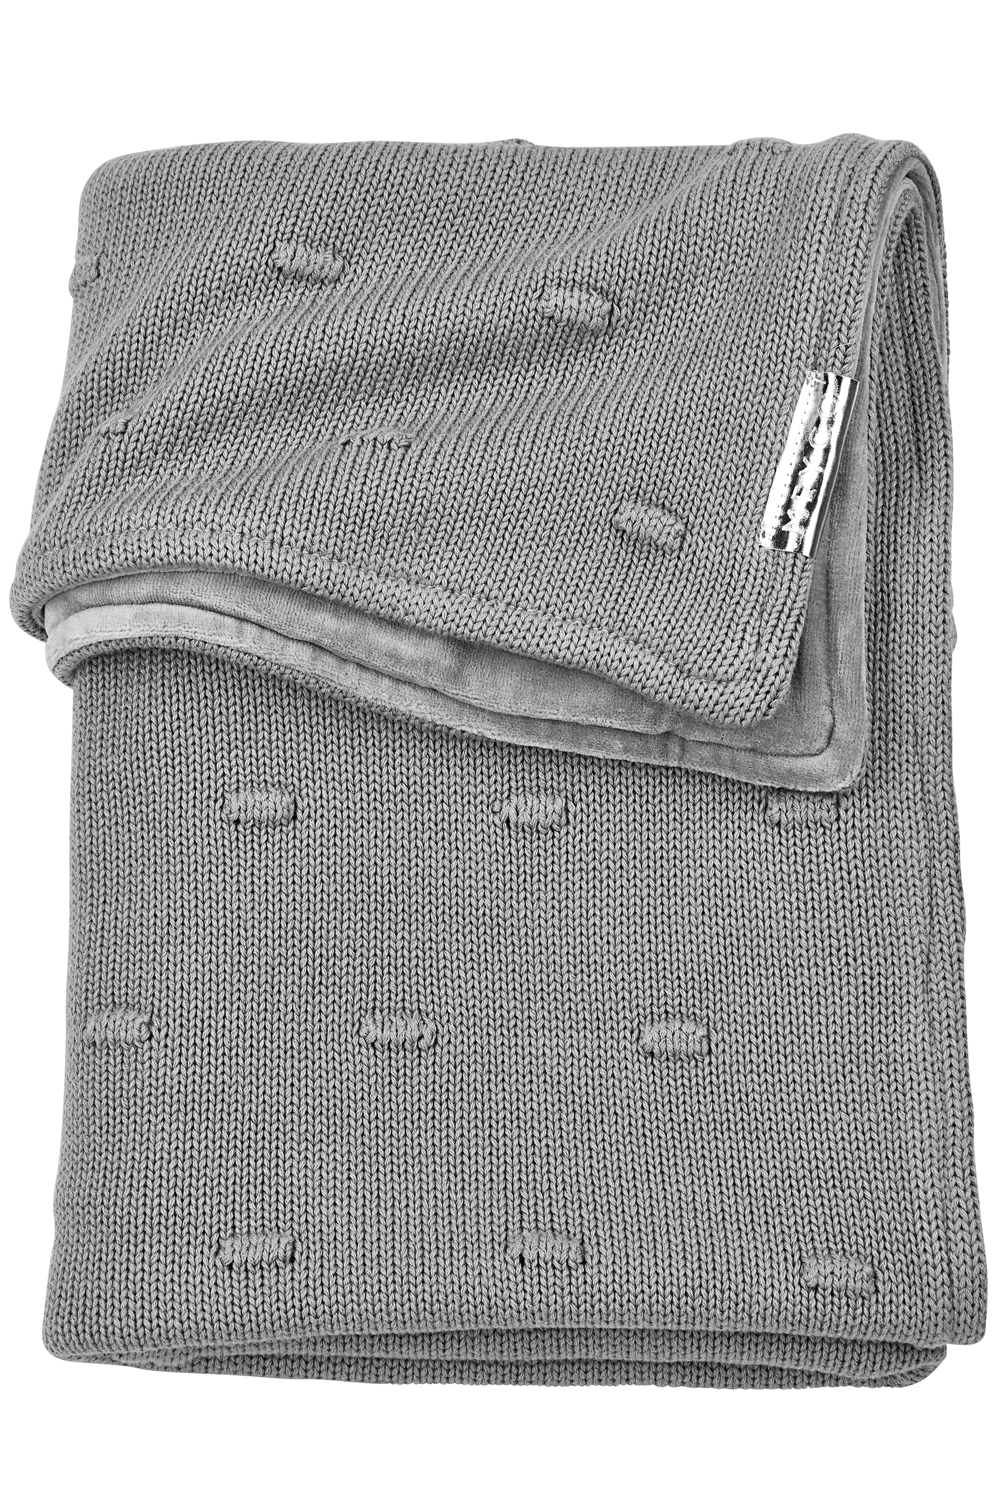 Ledikant deken Knots velvet - grey - 100x150cm